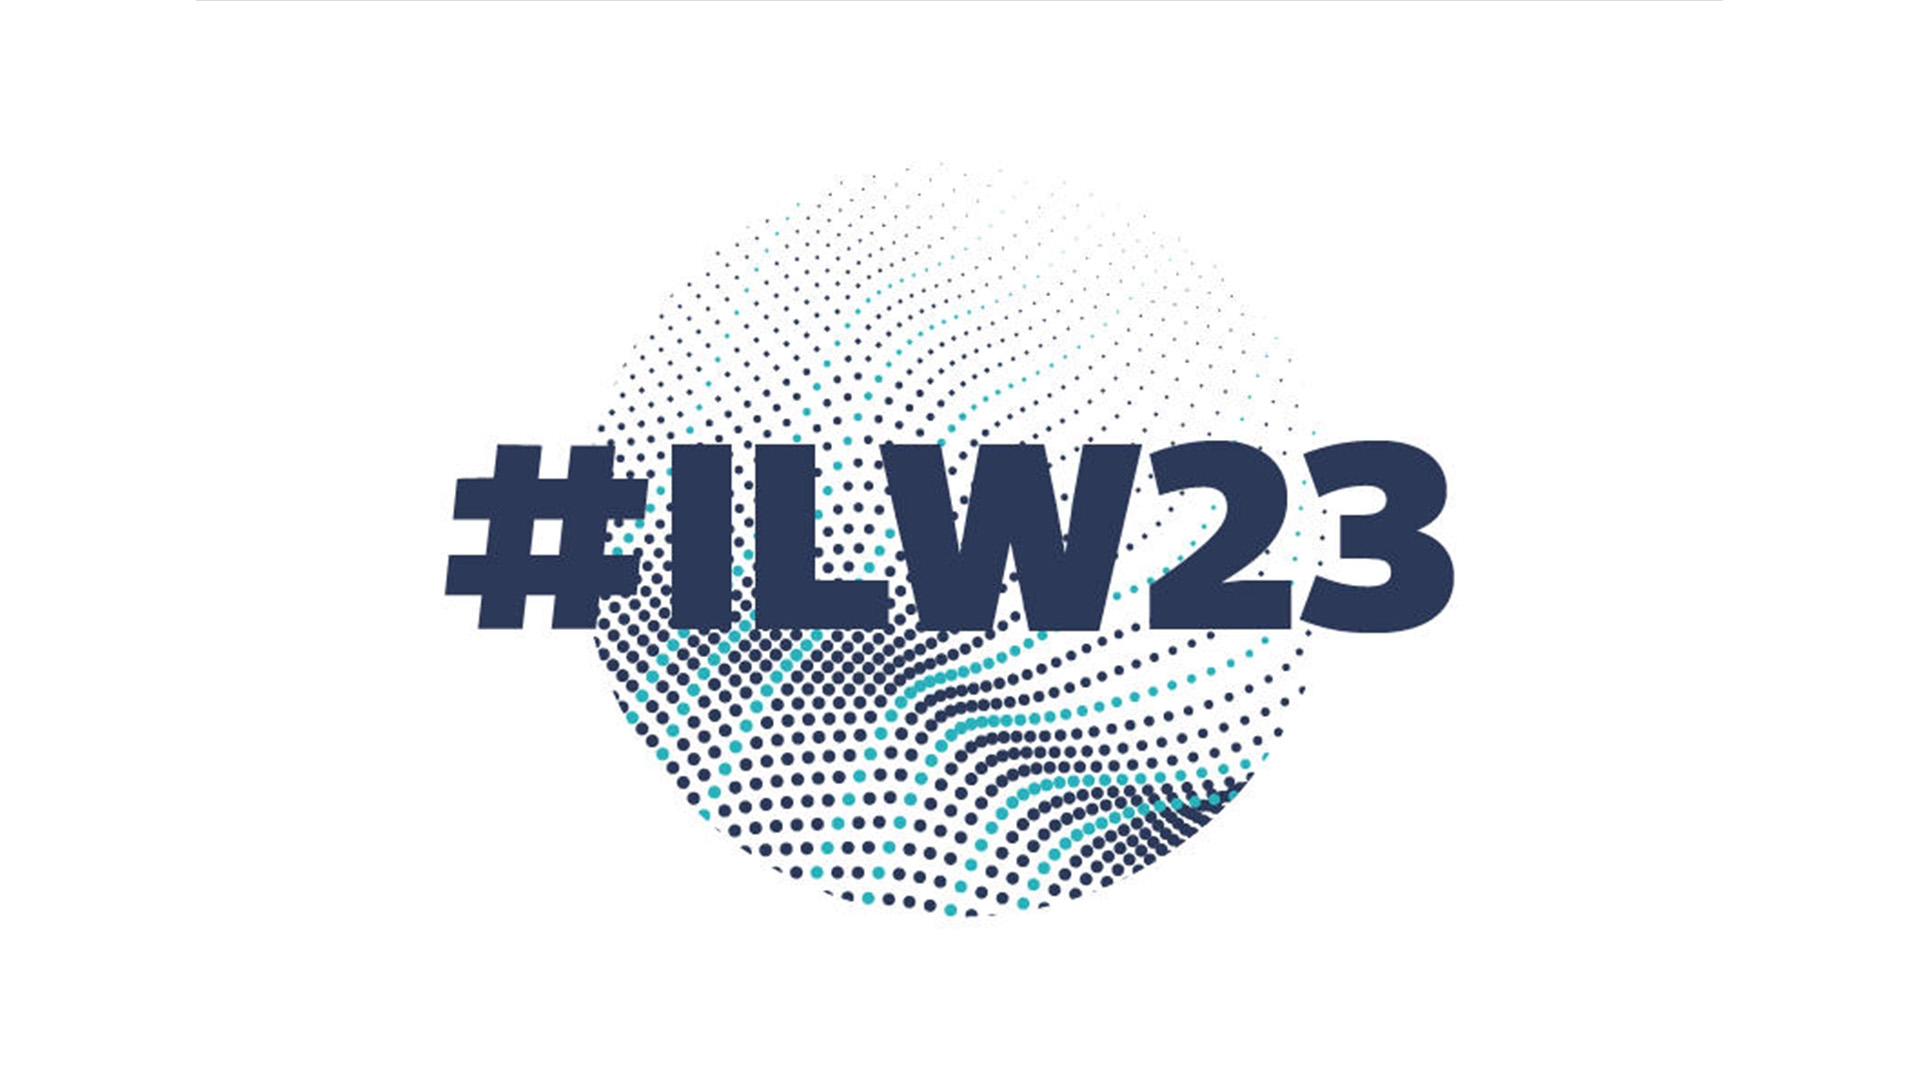 International Leadership Week 2023 logo